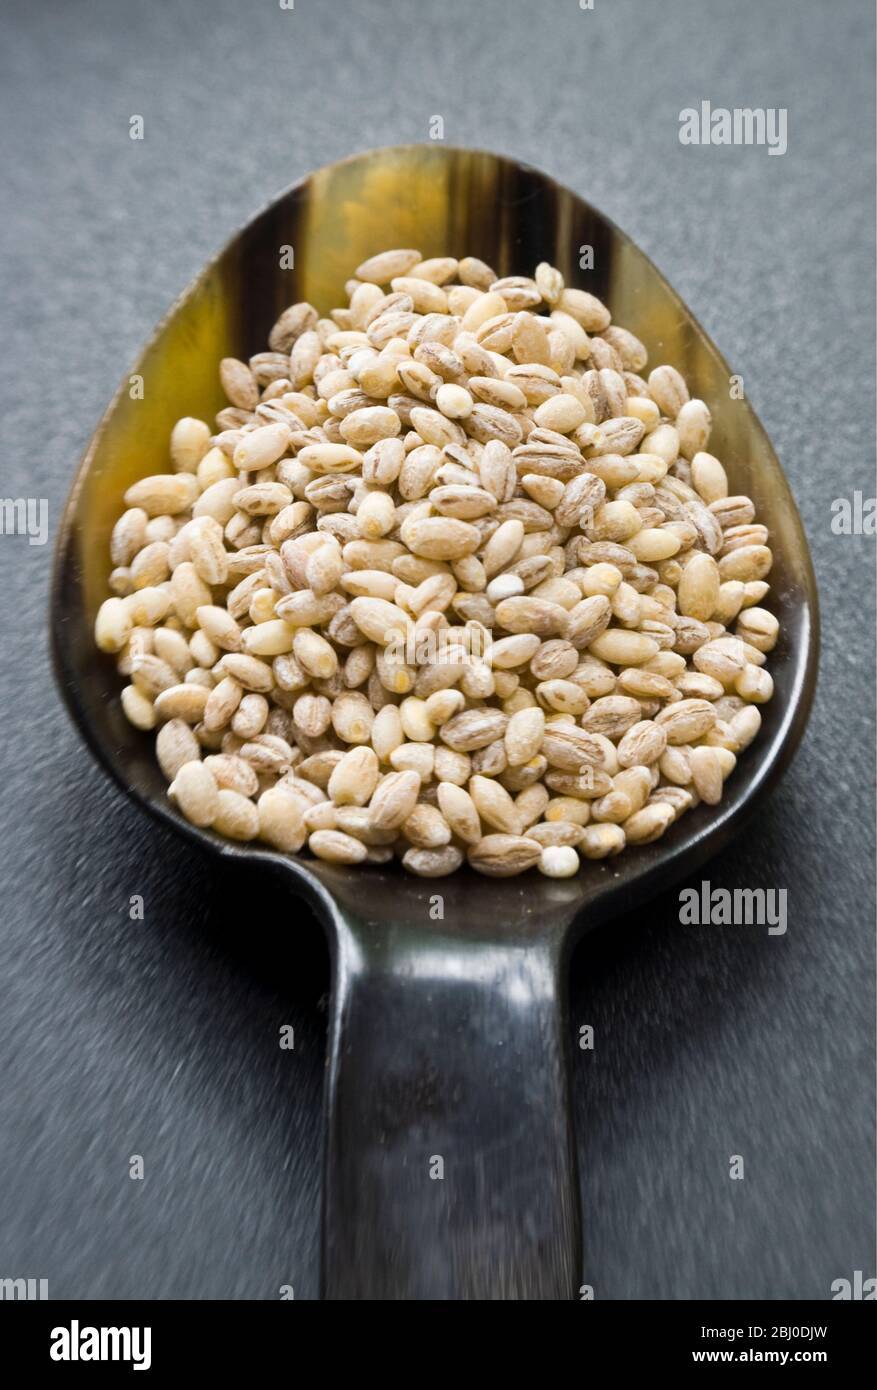 Ein Hornlöffel ganze Perle Gerste Korn auf dunkler Oberfläche - Stockfoto